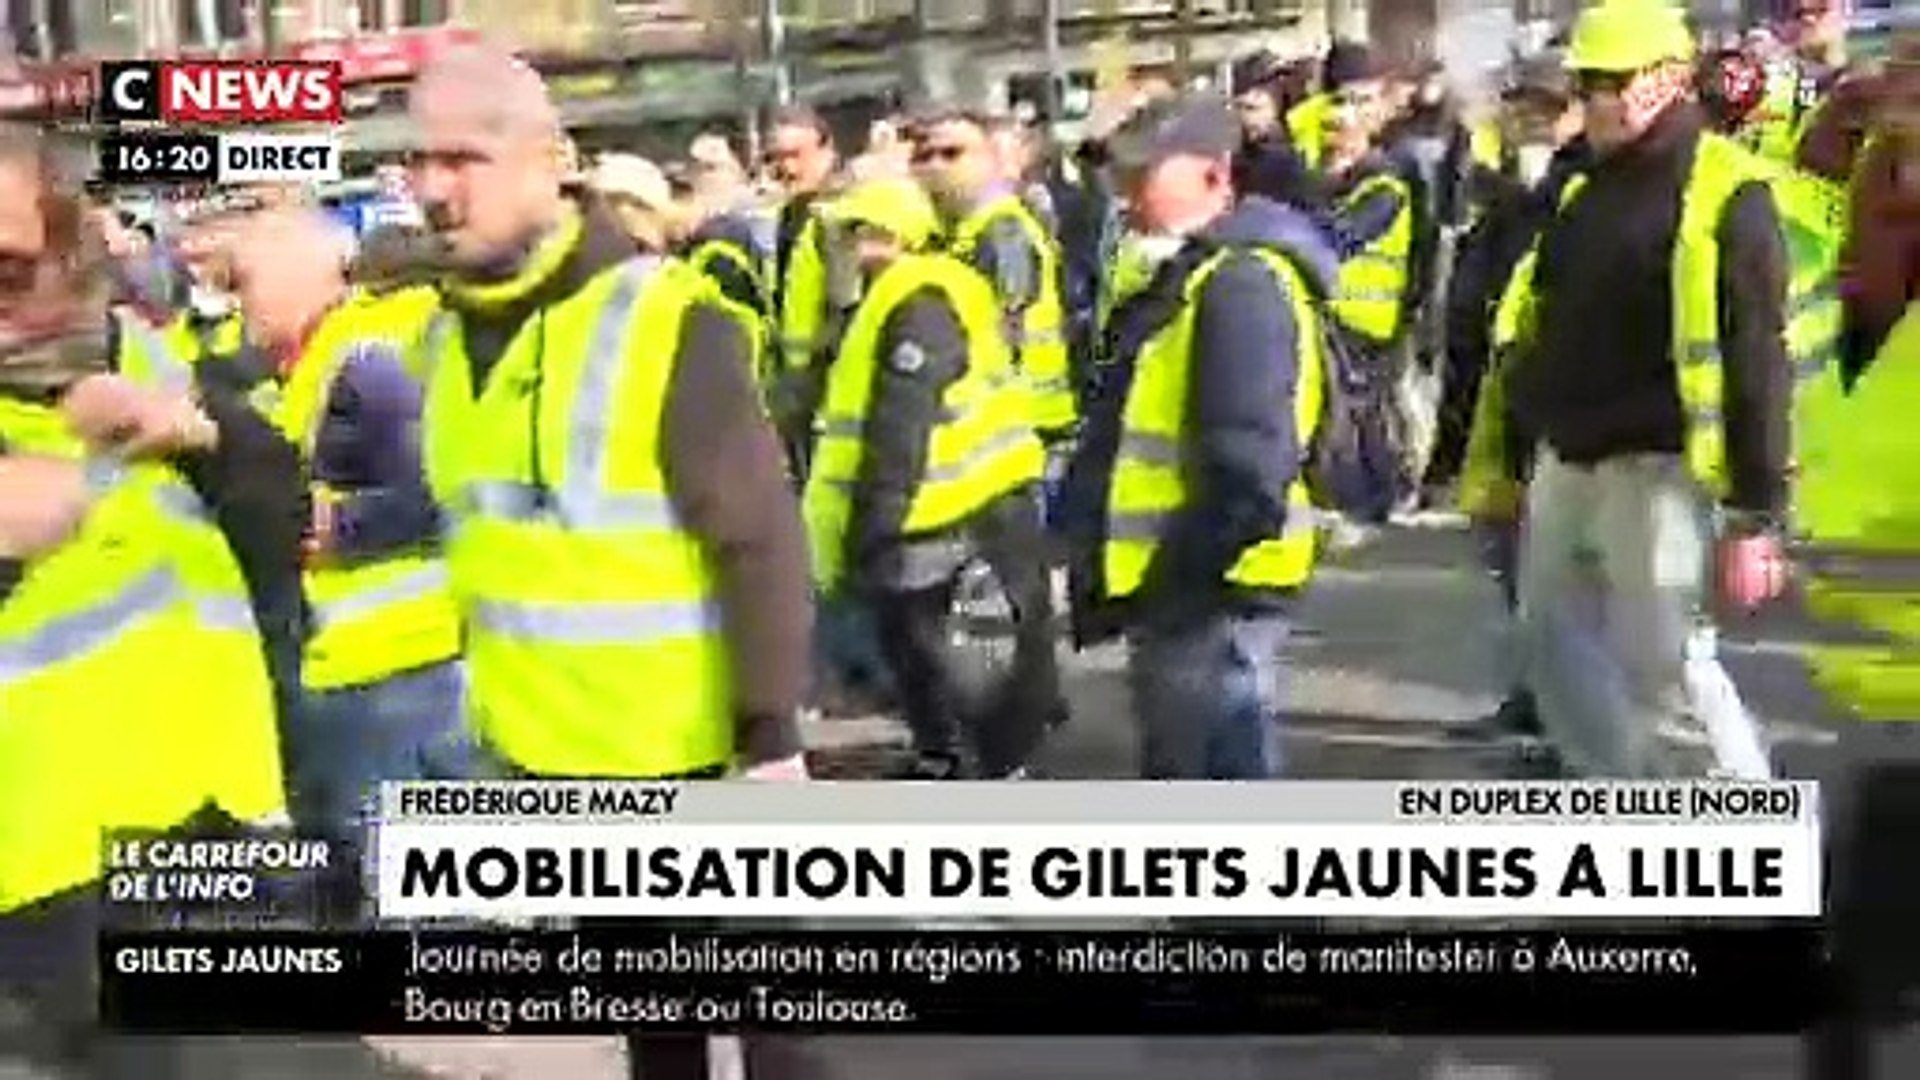 Gilets Jaunes - Nouvelles violences contre des équipes de télé : Des  journalistes de CNews se font éjecter en direct du cortège à Lille - Vidéo  Dailymotion